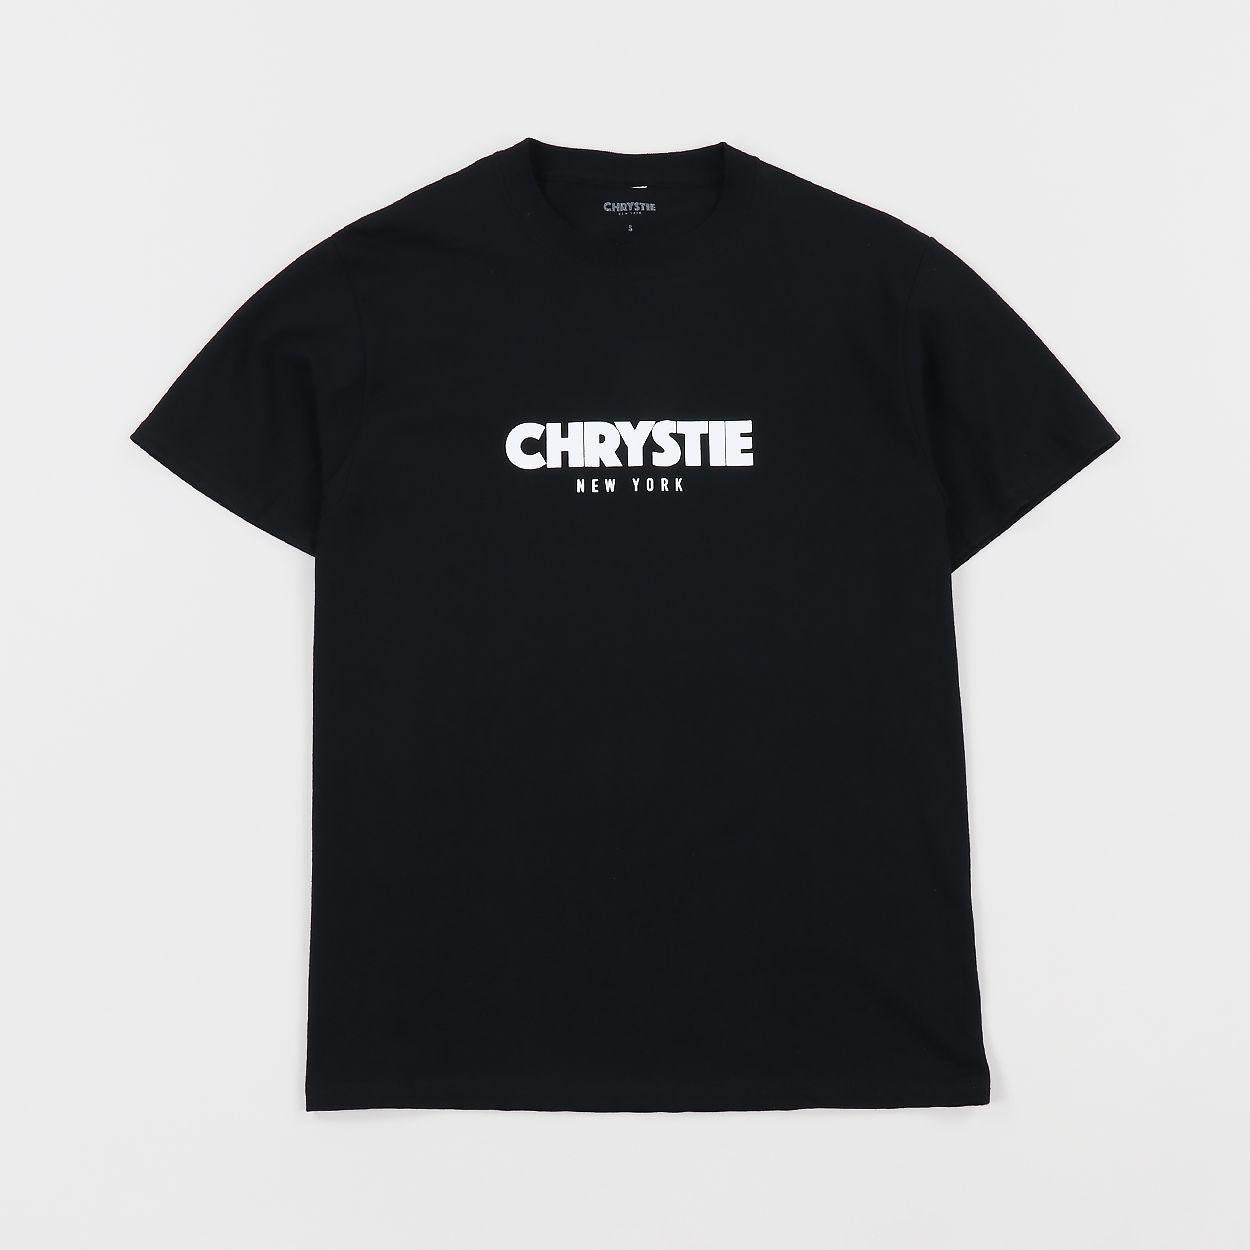 OG Logo - Chrystie NYC Mens OG Logo Graphic Short Sleeve T Shirt Tee Black £29.00